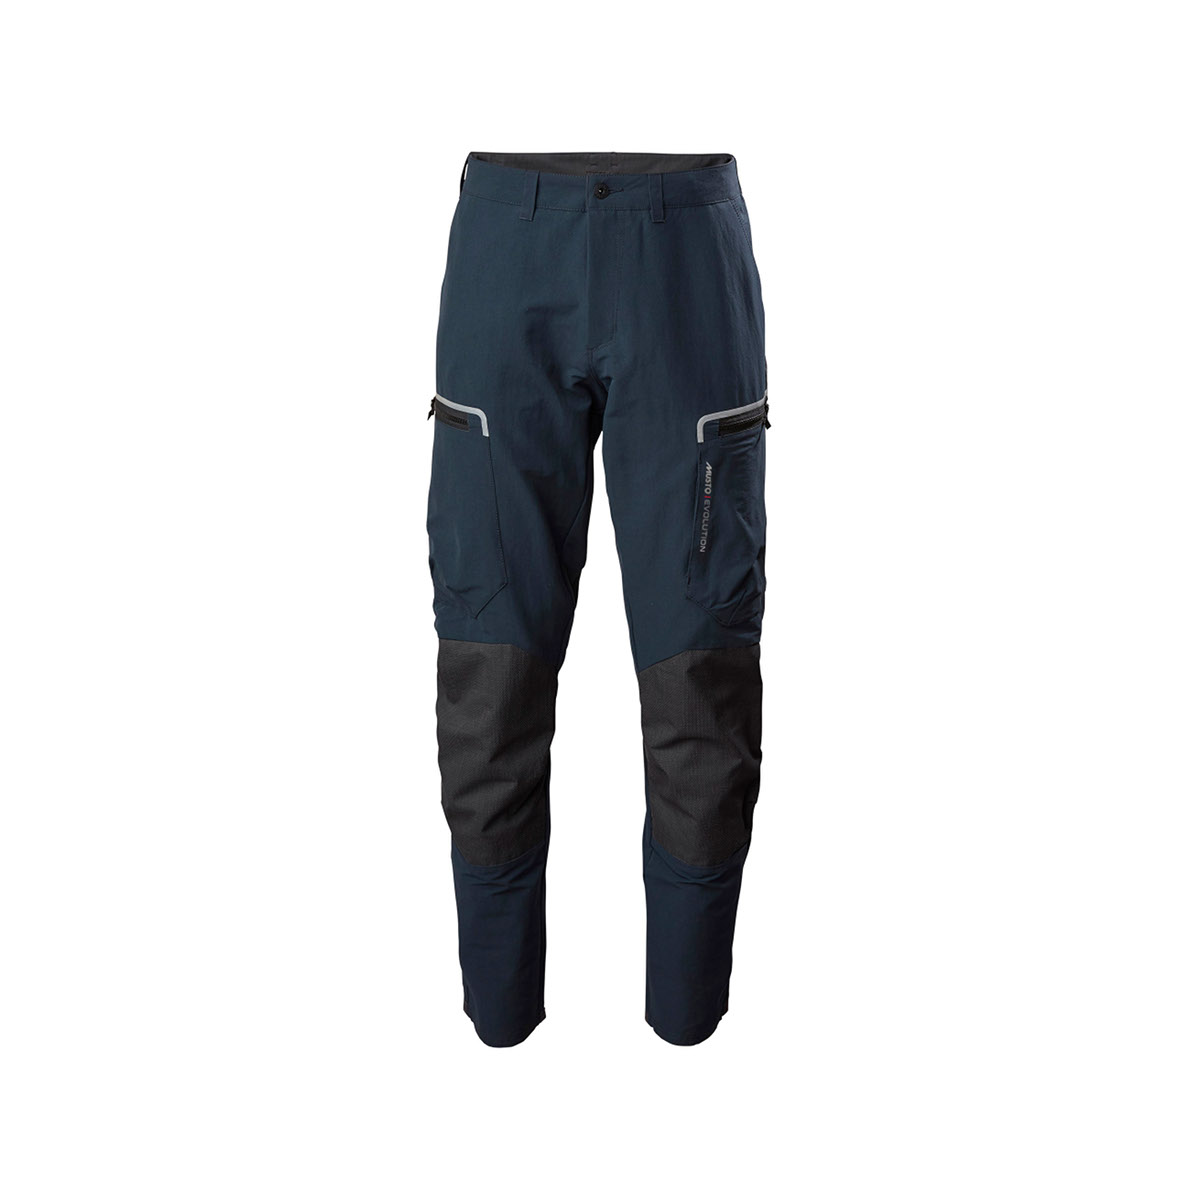 Musto Evolution Performance pantalon de voile 2.0 homme bleu marine, taille 34 Long